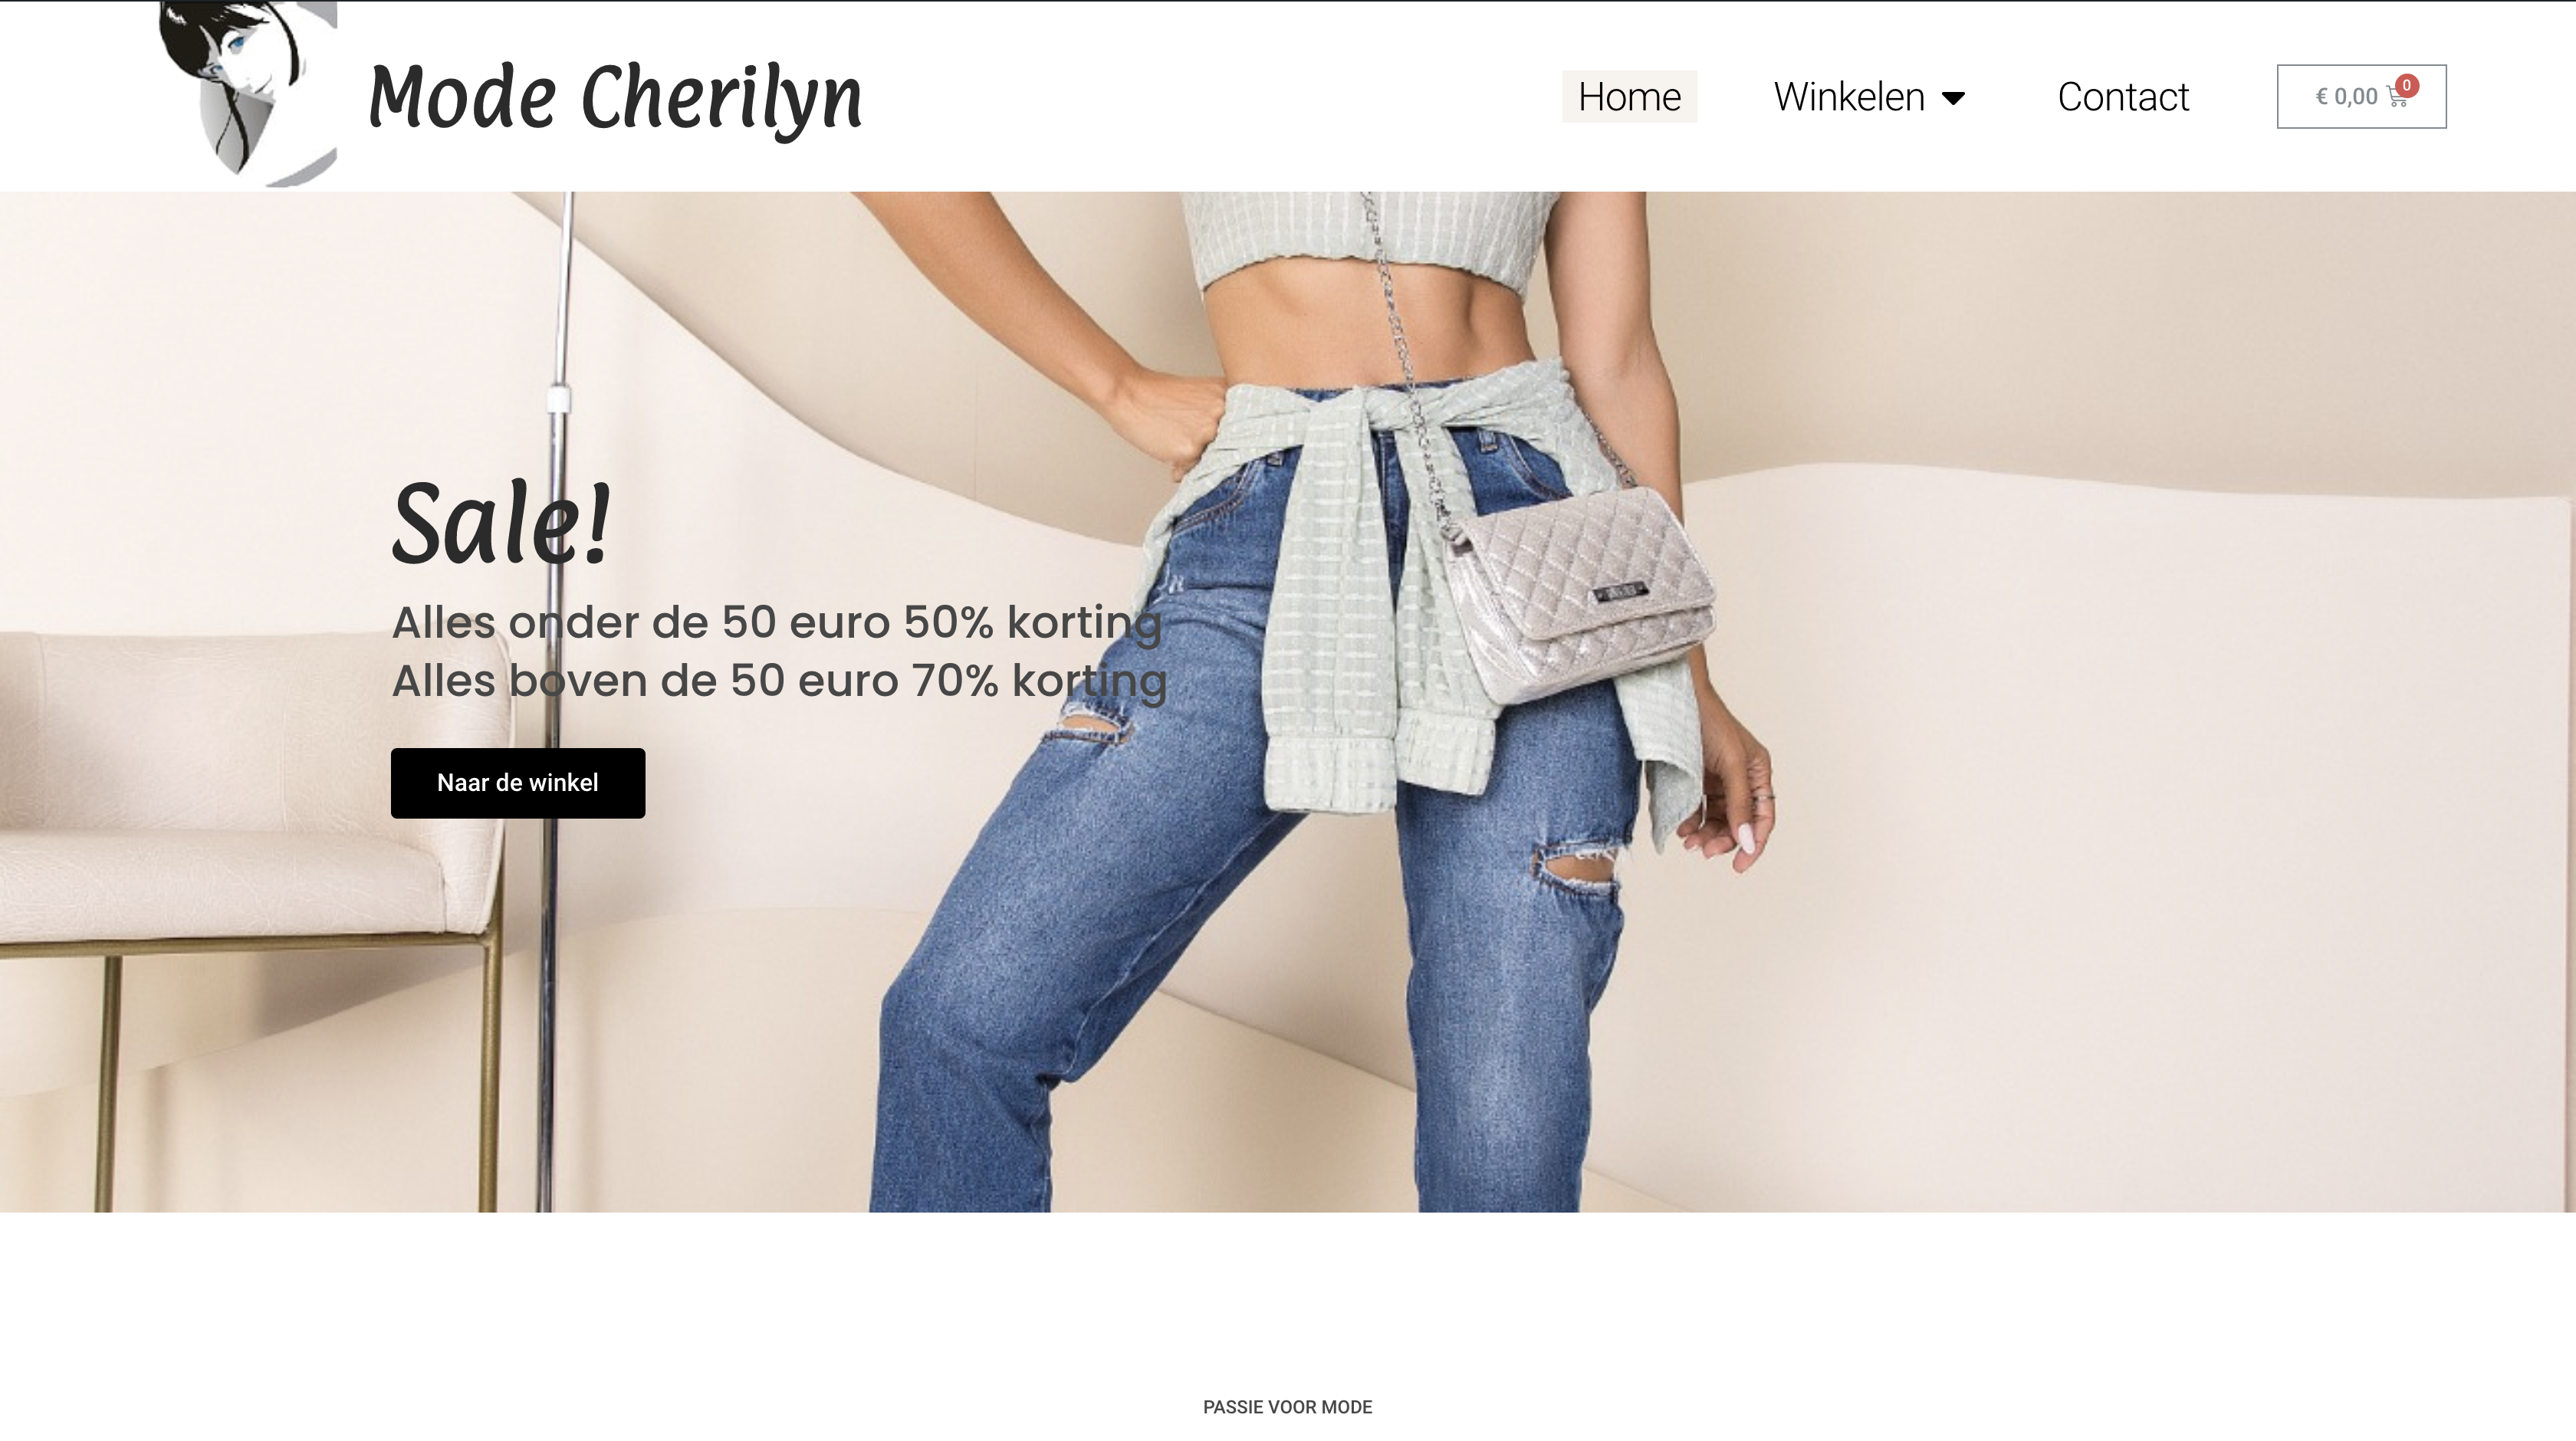 Homepagina mode cherilyn met grote banner van de benen van een vrouw en sale